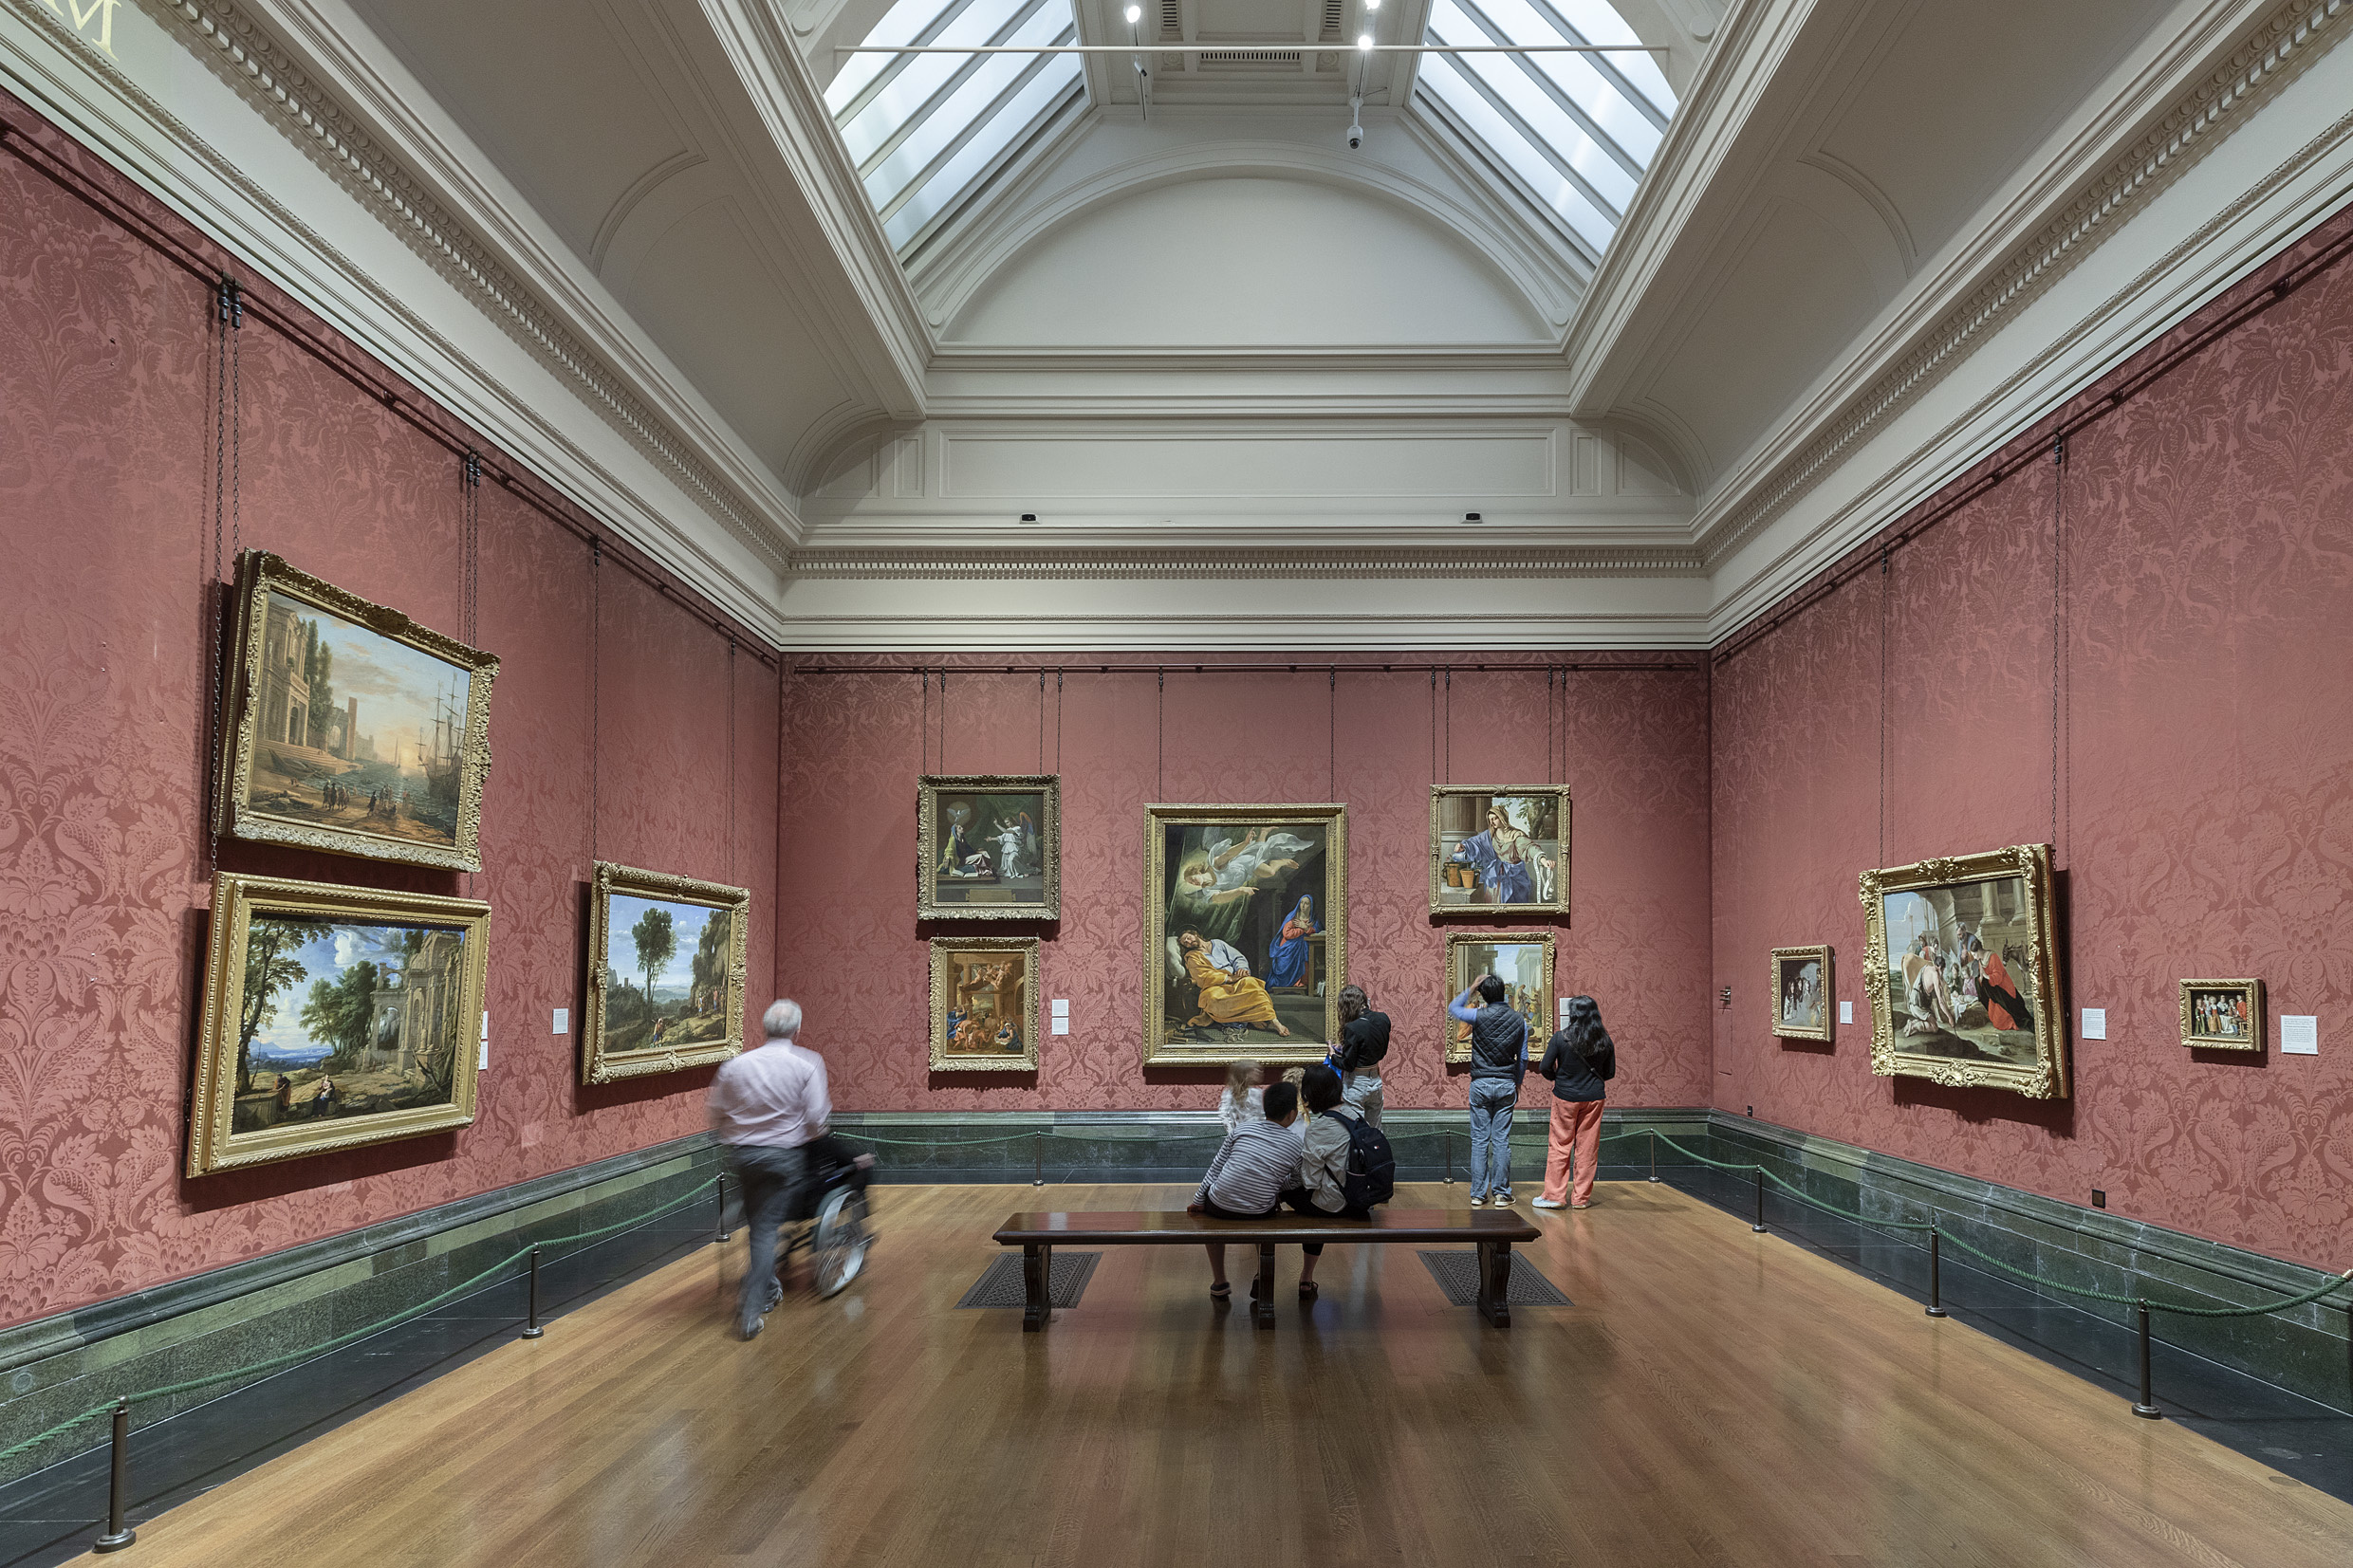 英 國 國 家 藝 廊 是 世 界 最 偉 大 美 術 館 之 一 。 圖 片 版 權 ： 英 國 國 家 藝 廊 